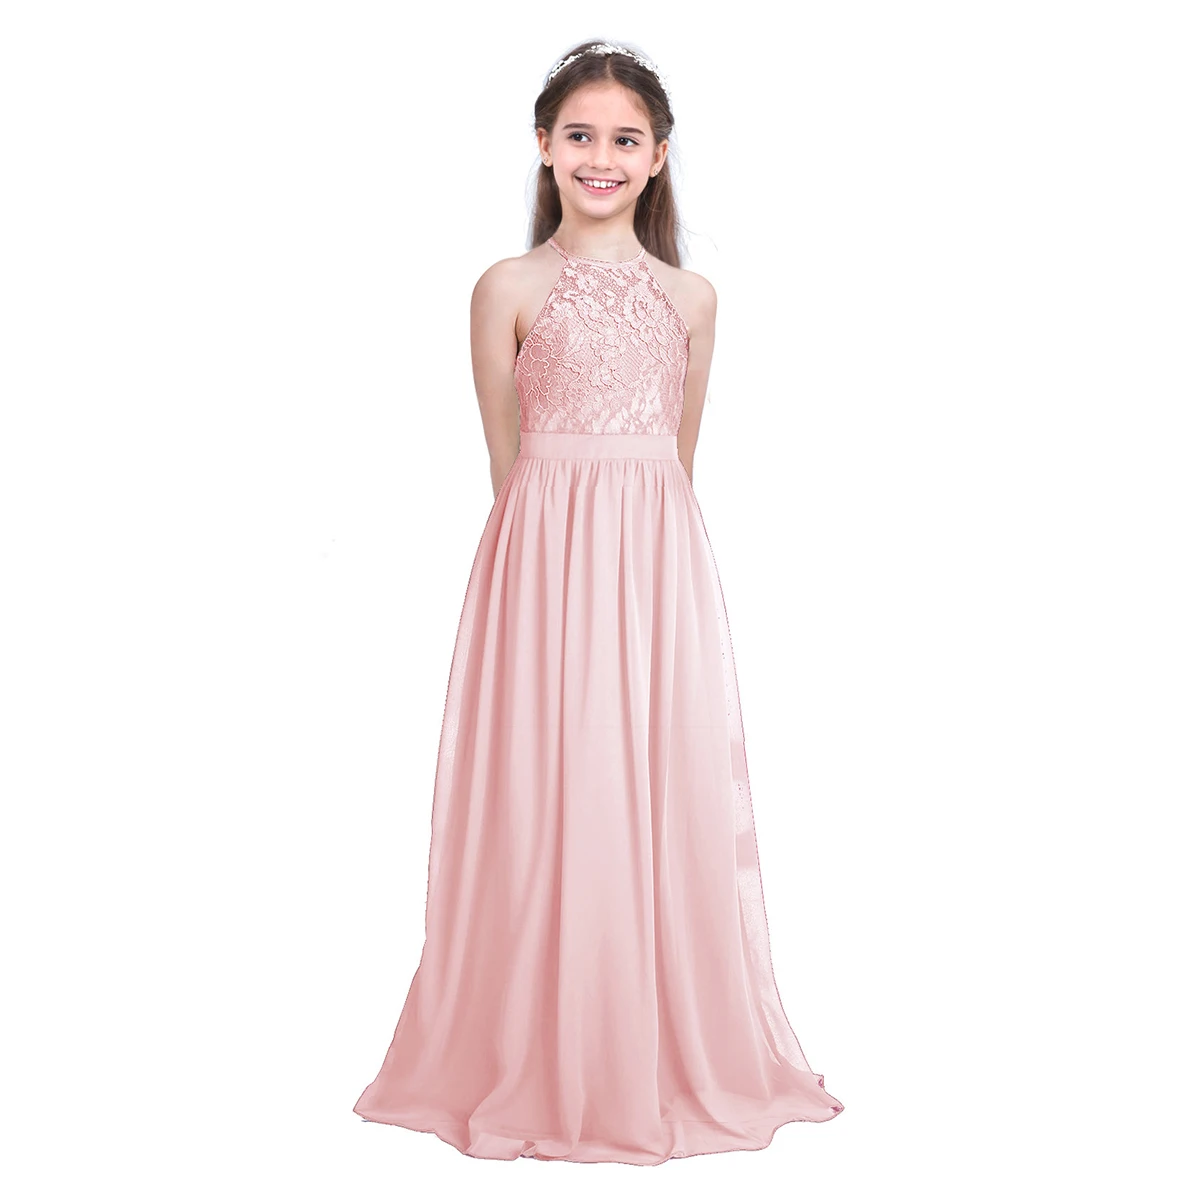 

Кружевное шифоновое платье с лямкой на шее и цветочным принтом для девочек, платье принцессы на свадьбу, день рождения, детское длинное плат...